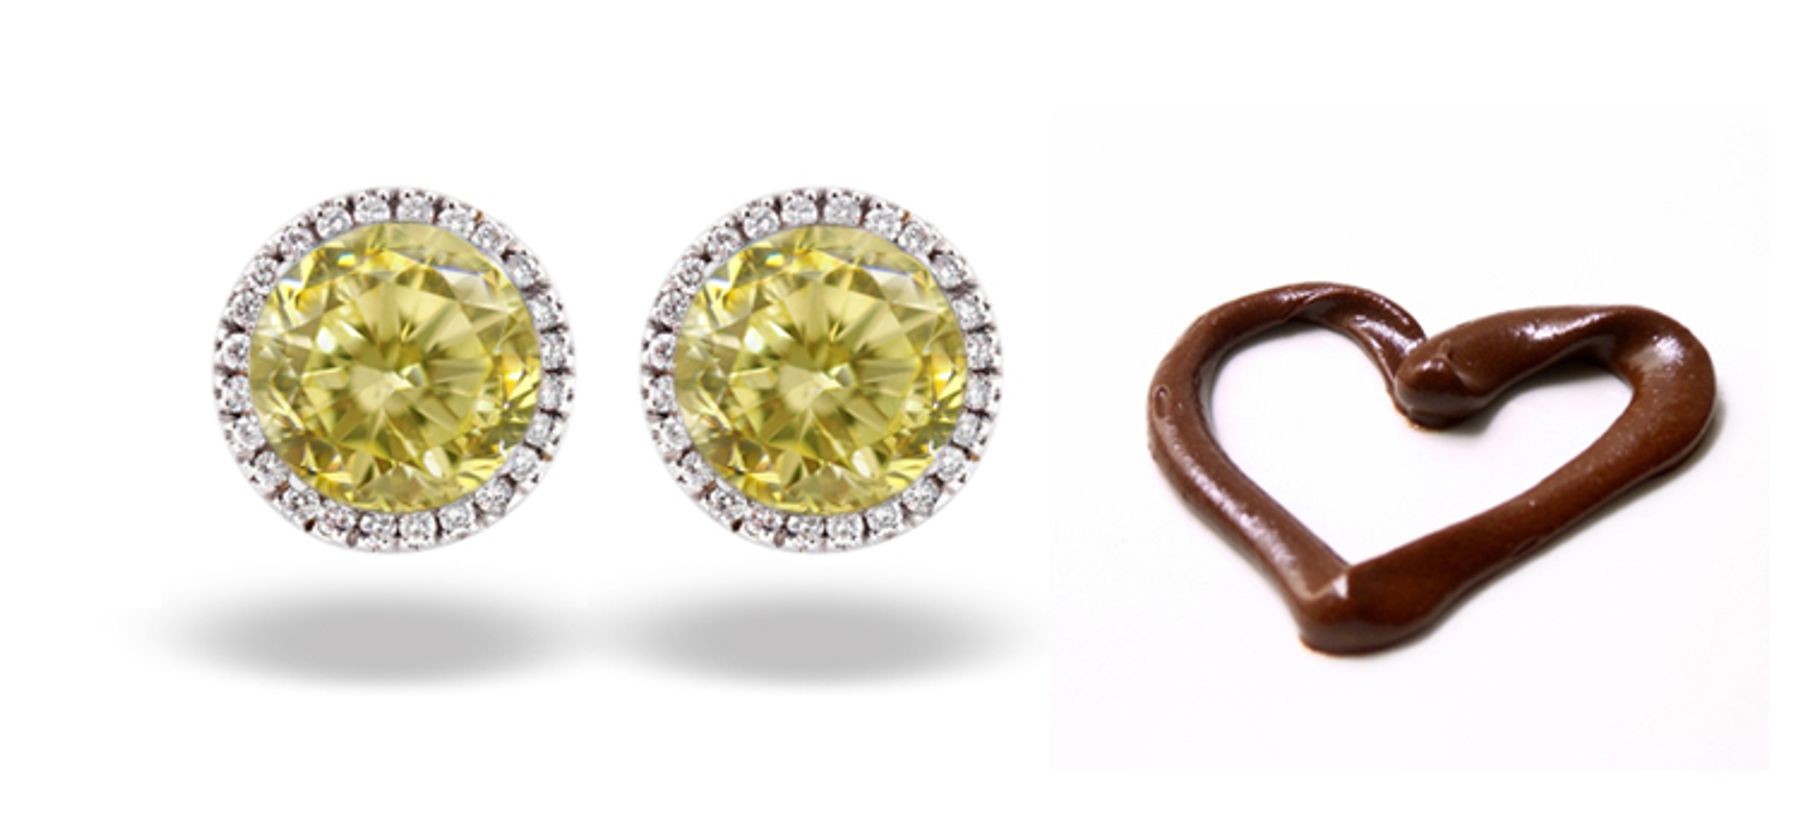 Premier Colored Diamonds Designer Collection - Yellow Colored Diamonds & Yellow Diamond Earrings